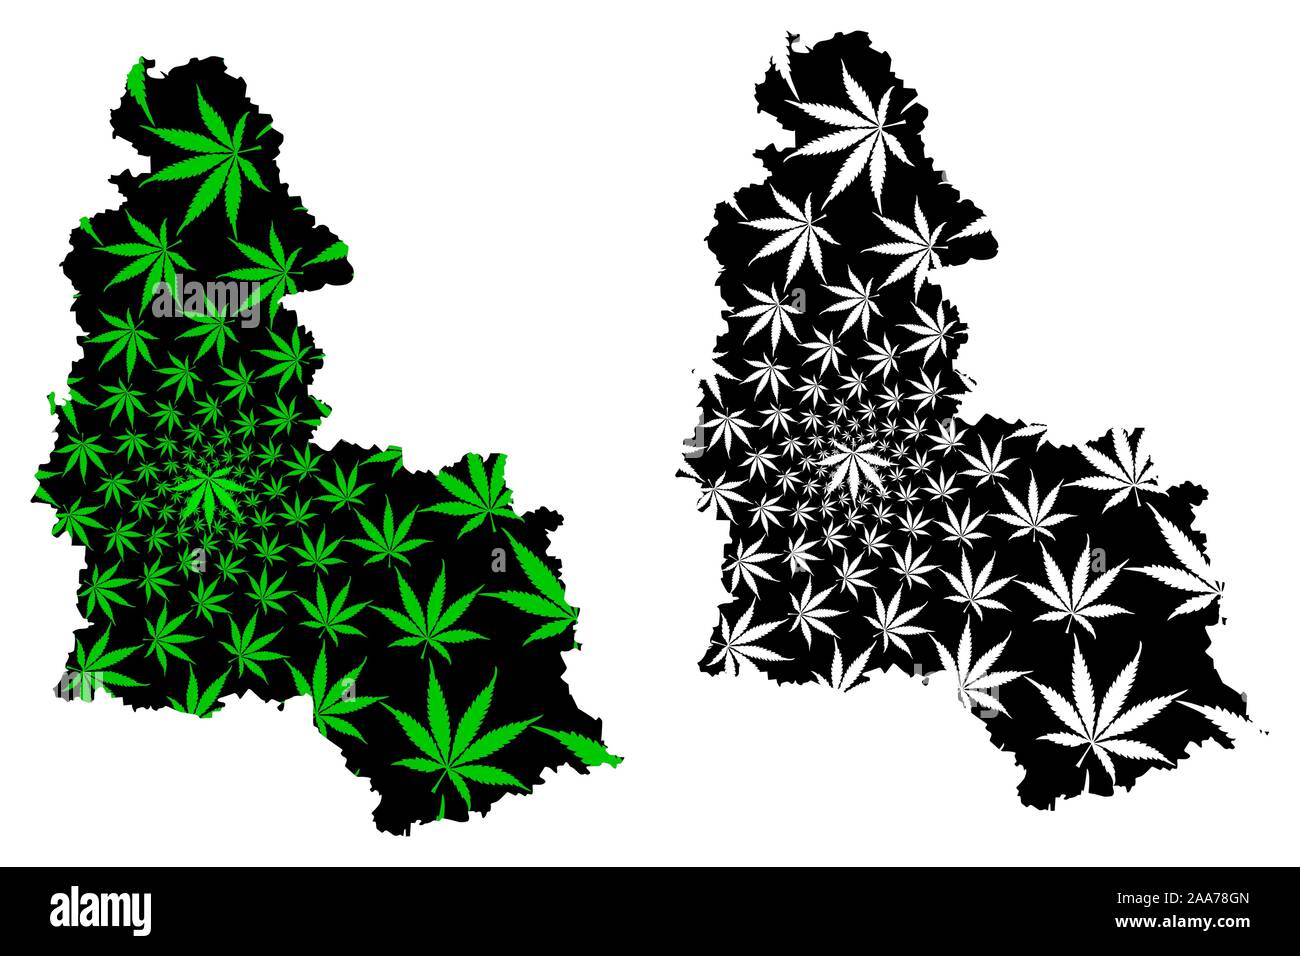 Kharkov Oblast (administrative divisions in der Ukraine, Oblast der Ukraine) Karte ist Cannabis blatt grün und schwarz gestaltet, Sumshchyna Karte aus Marihuana Stock Vektor